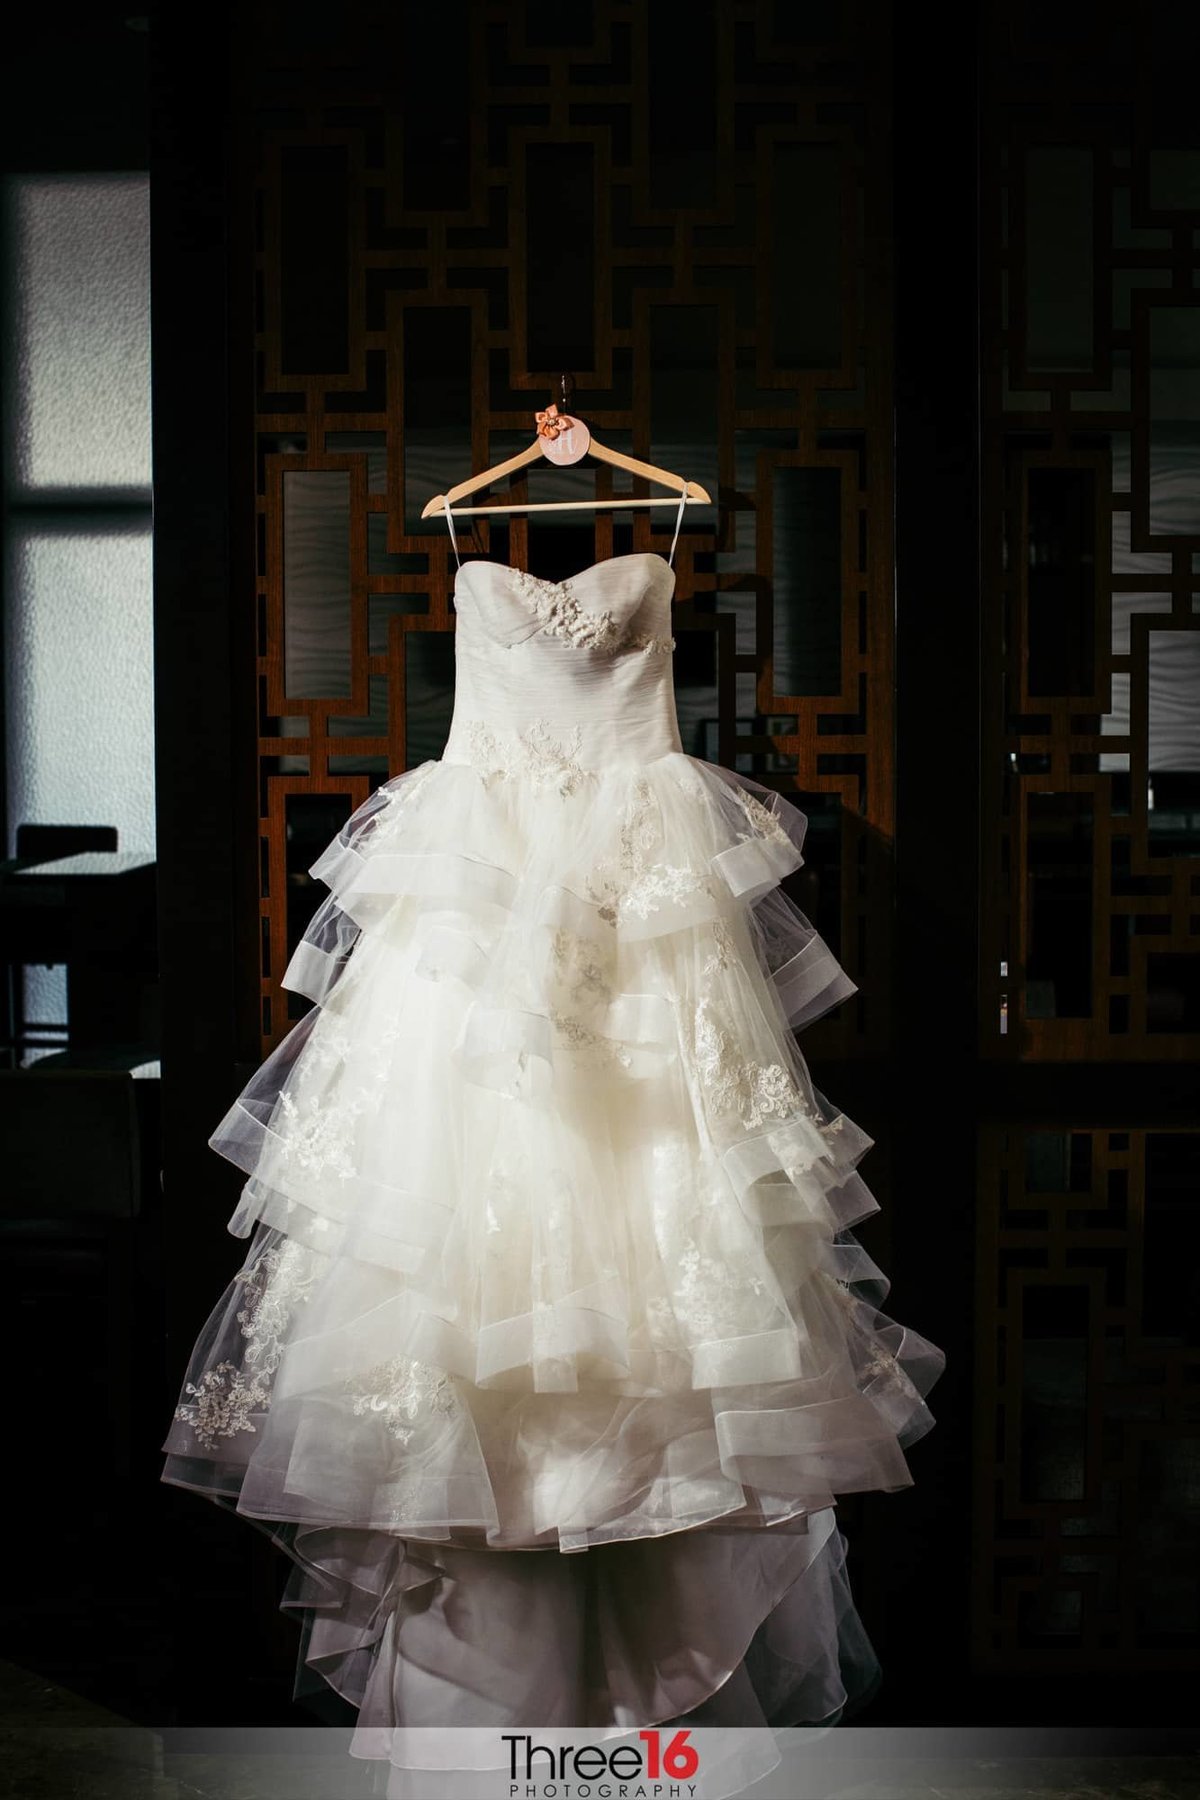 Bride's wedding dress hangs on display before she gets dressed